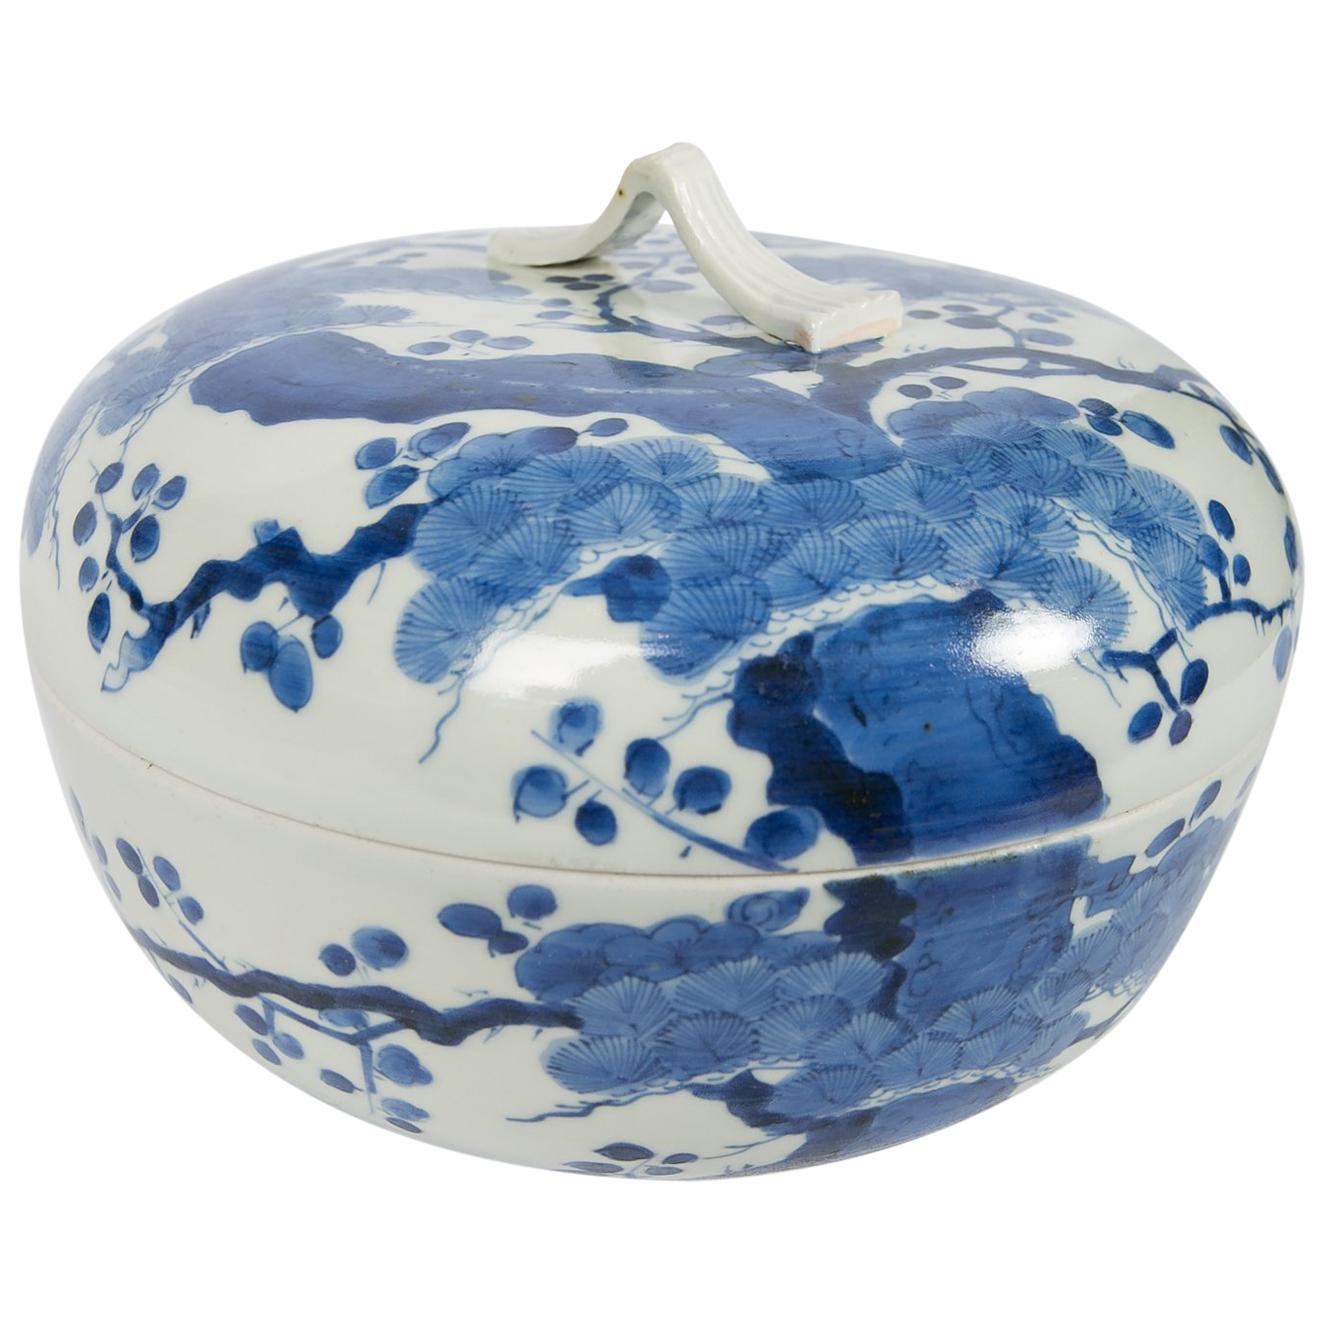 Antike japanische Schale aus blauem und weißem Porzellan um 1760